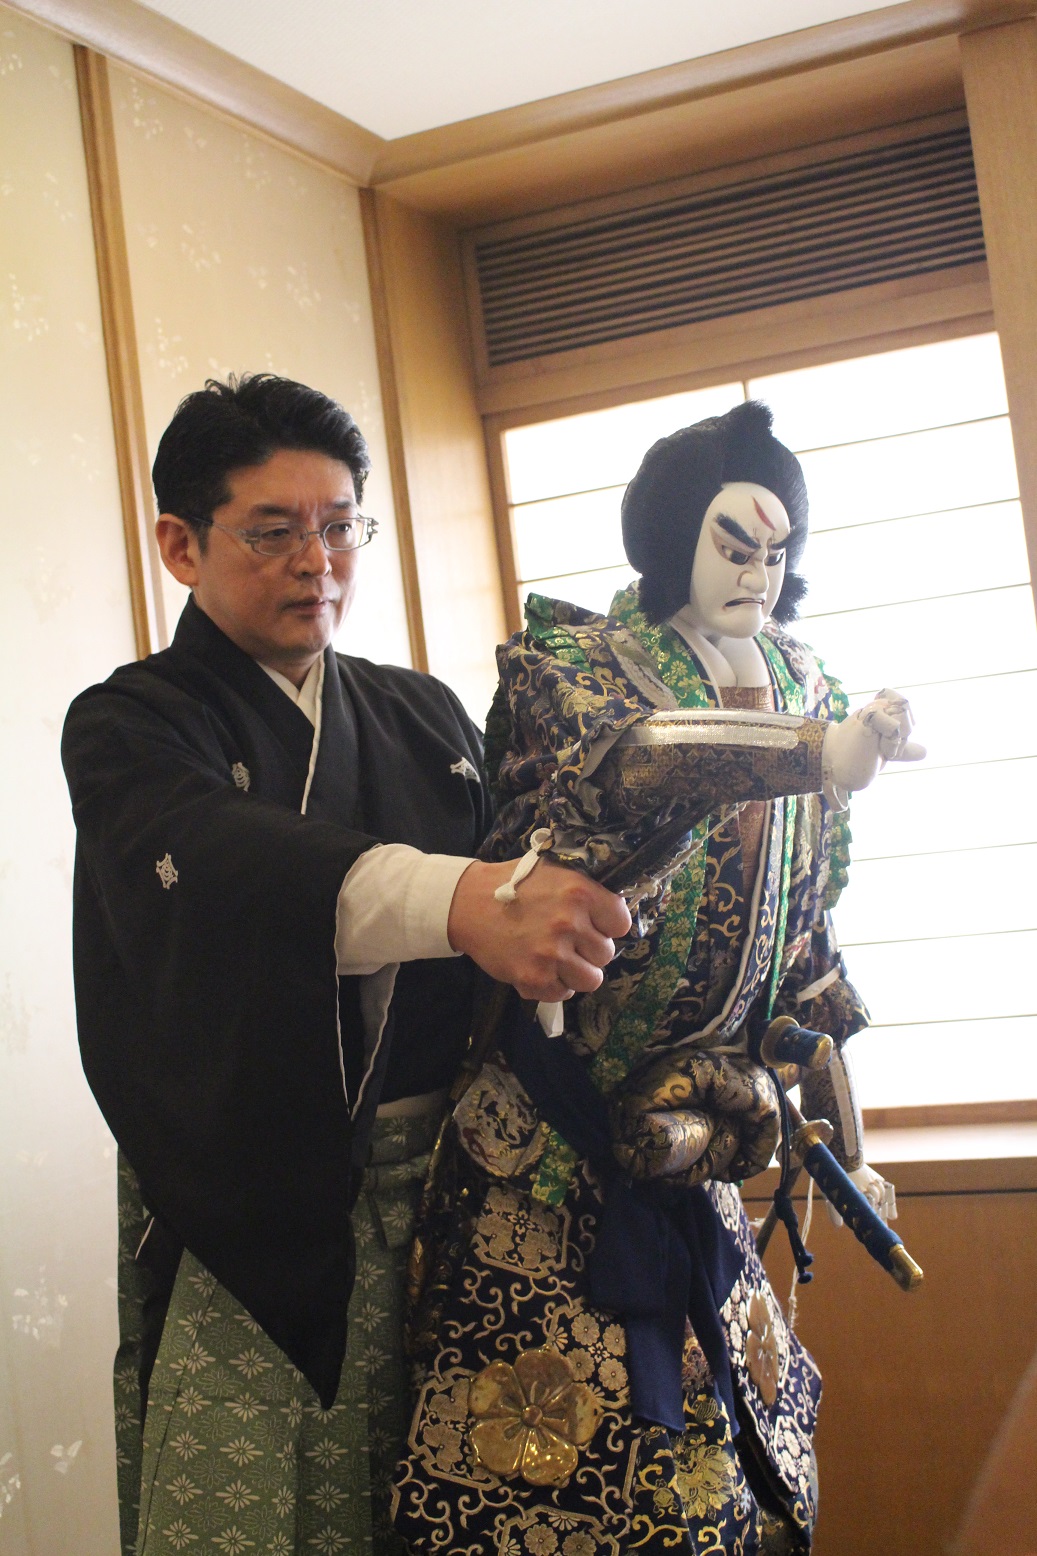 『人形浄瑠璃 文楽』の人形遣い 五代目吉田玉助さんにインタビュー